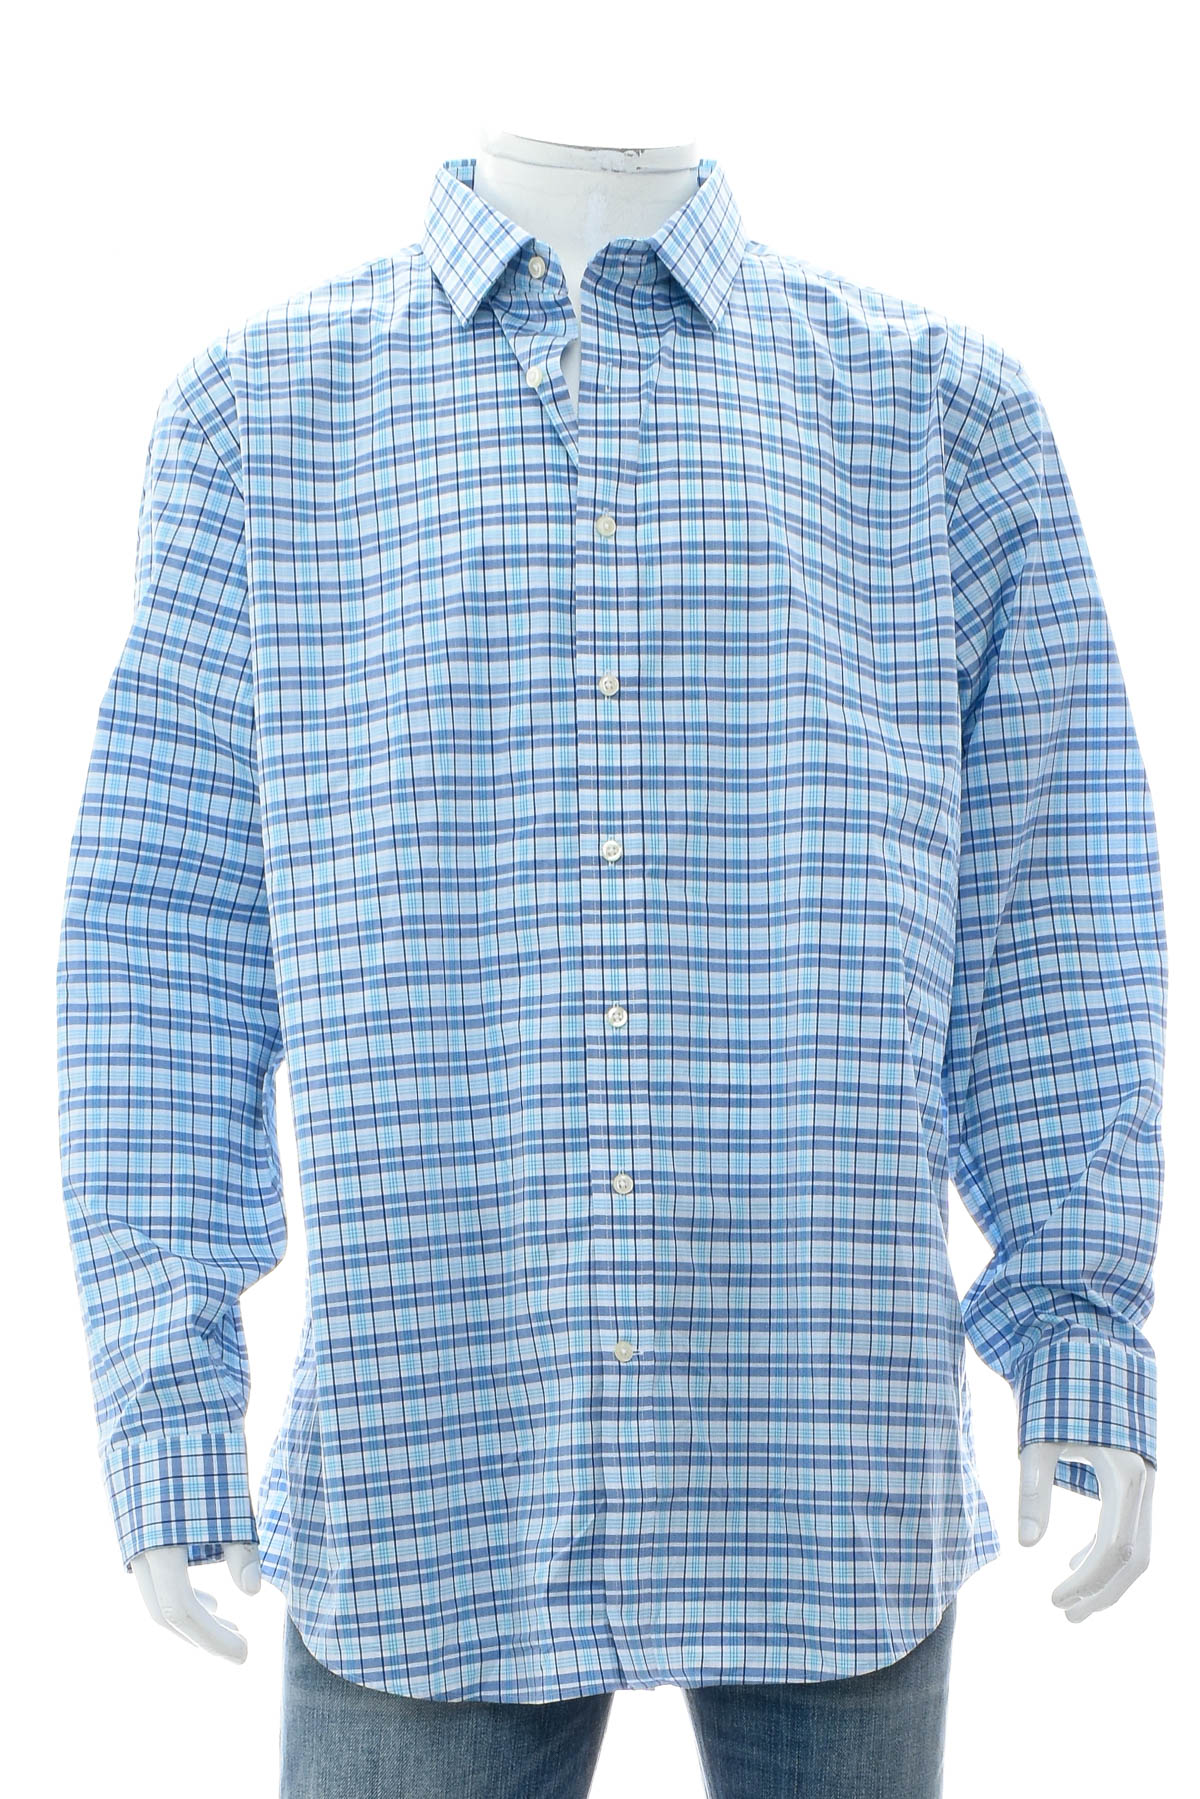 Ανδρικό πουκάμισο - Kirkland Signature - 0